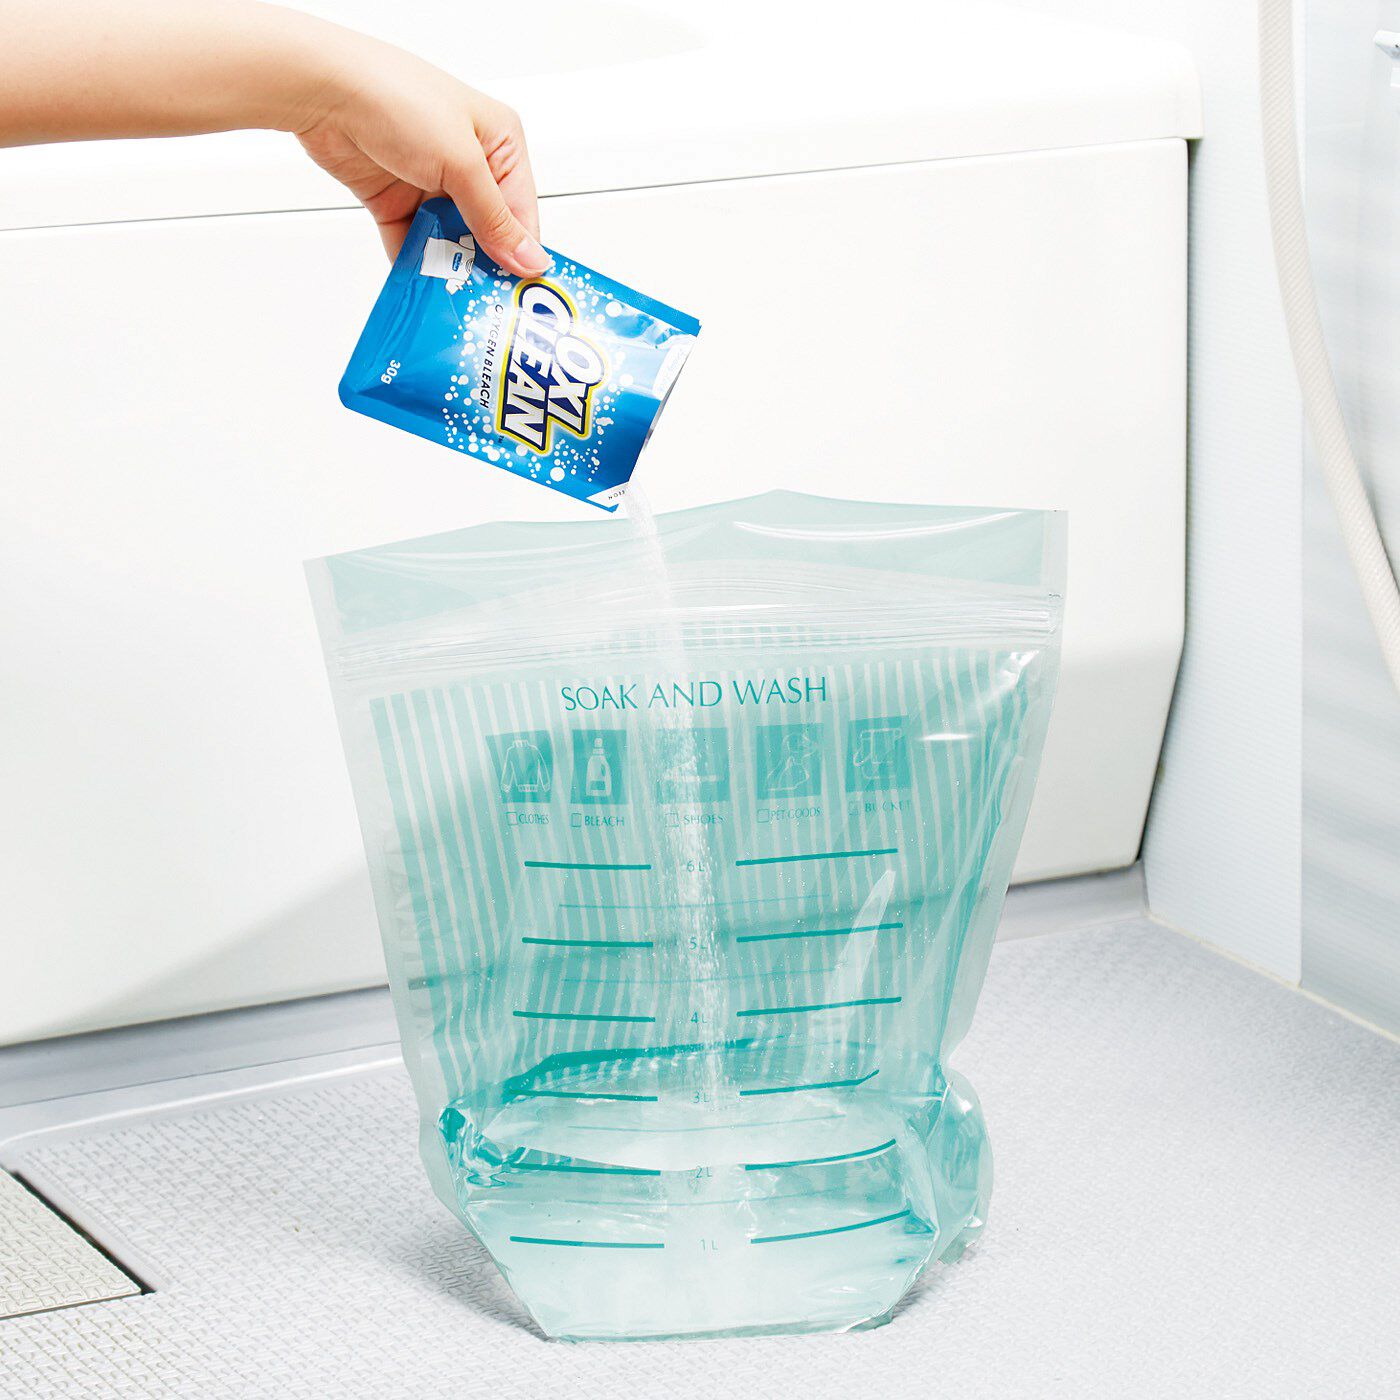 Real Stock|がんこ汚れの予洗いや洗い分けに便利な つけ置き洗濯ジッパーバッグ|How to Use　1．洗濯物の量に合わせて、裏面の水量目盛りを参考に、水と洗剤と洗濯物を入れます。